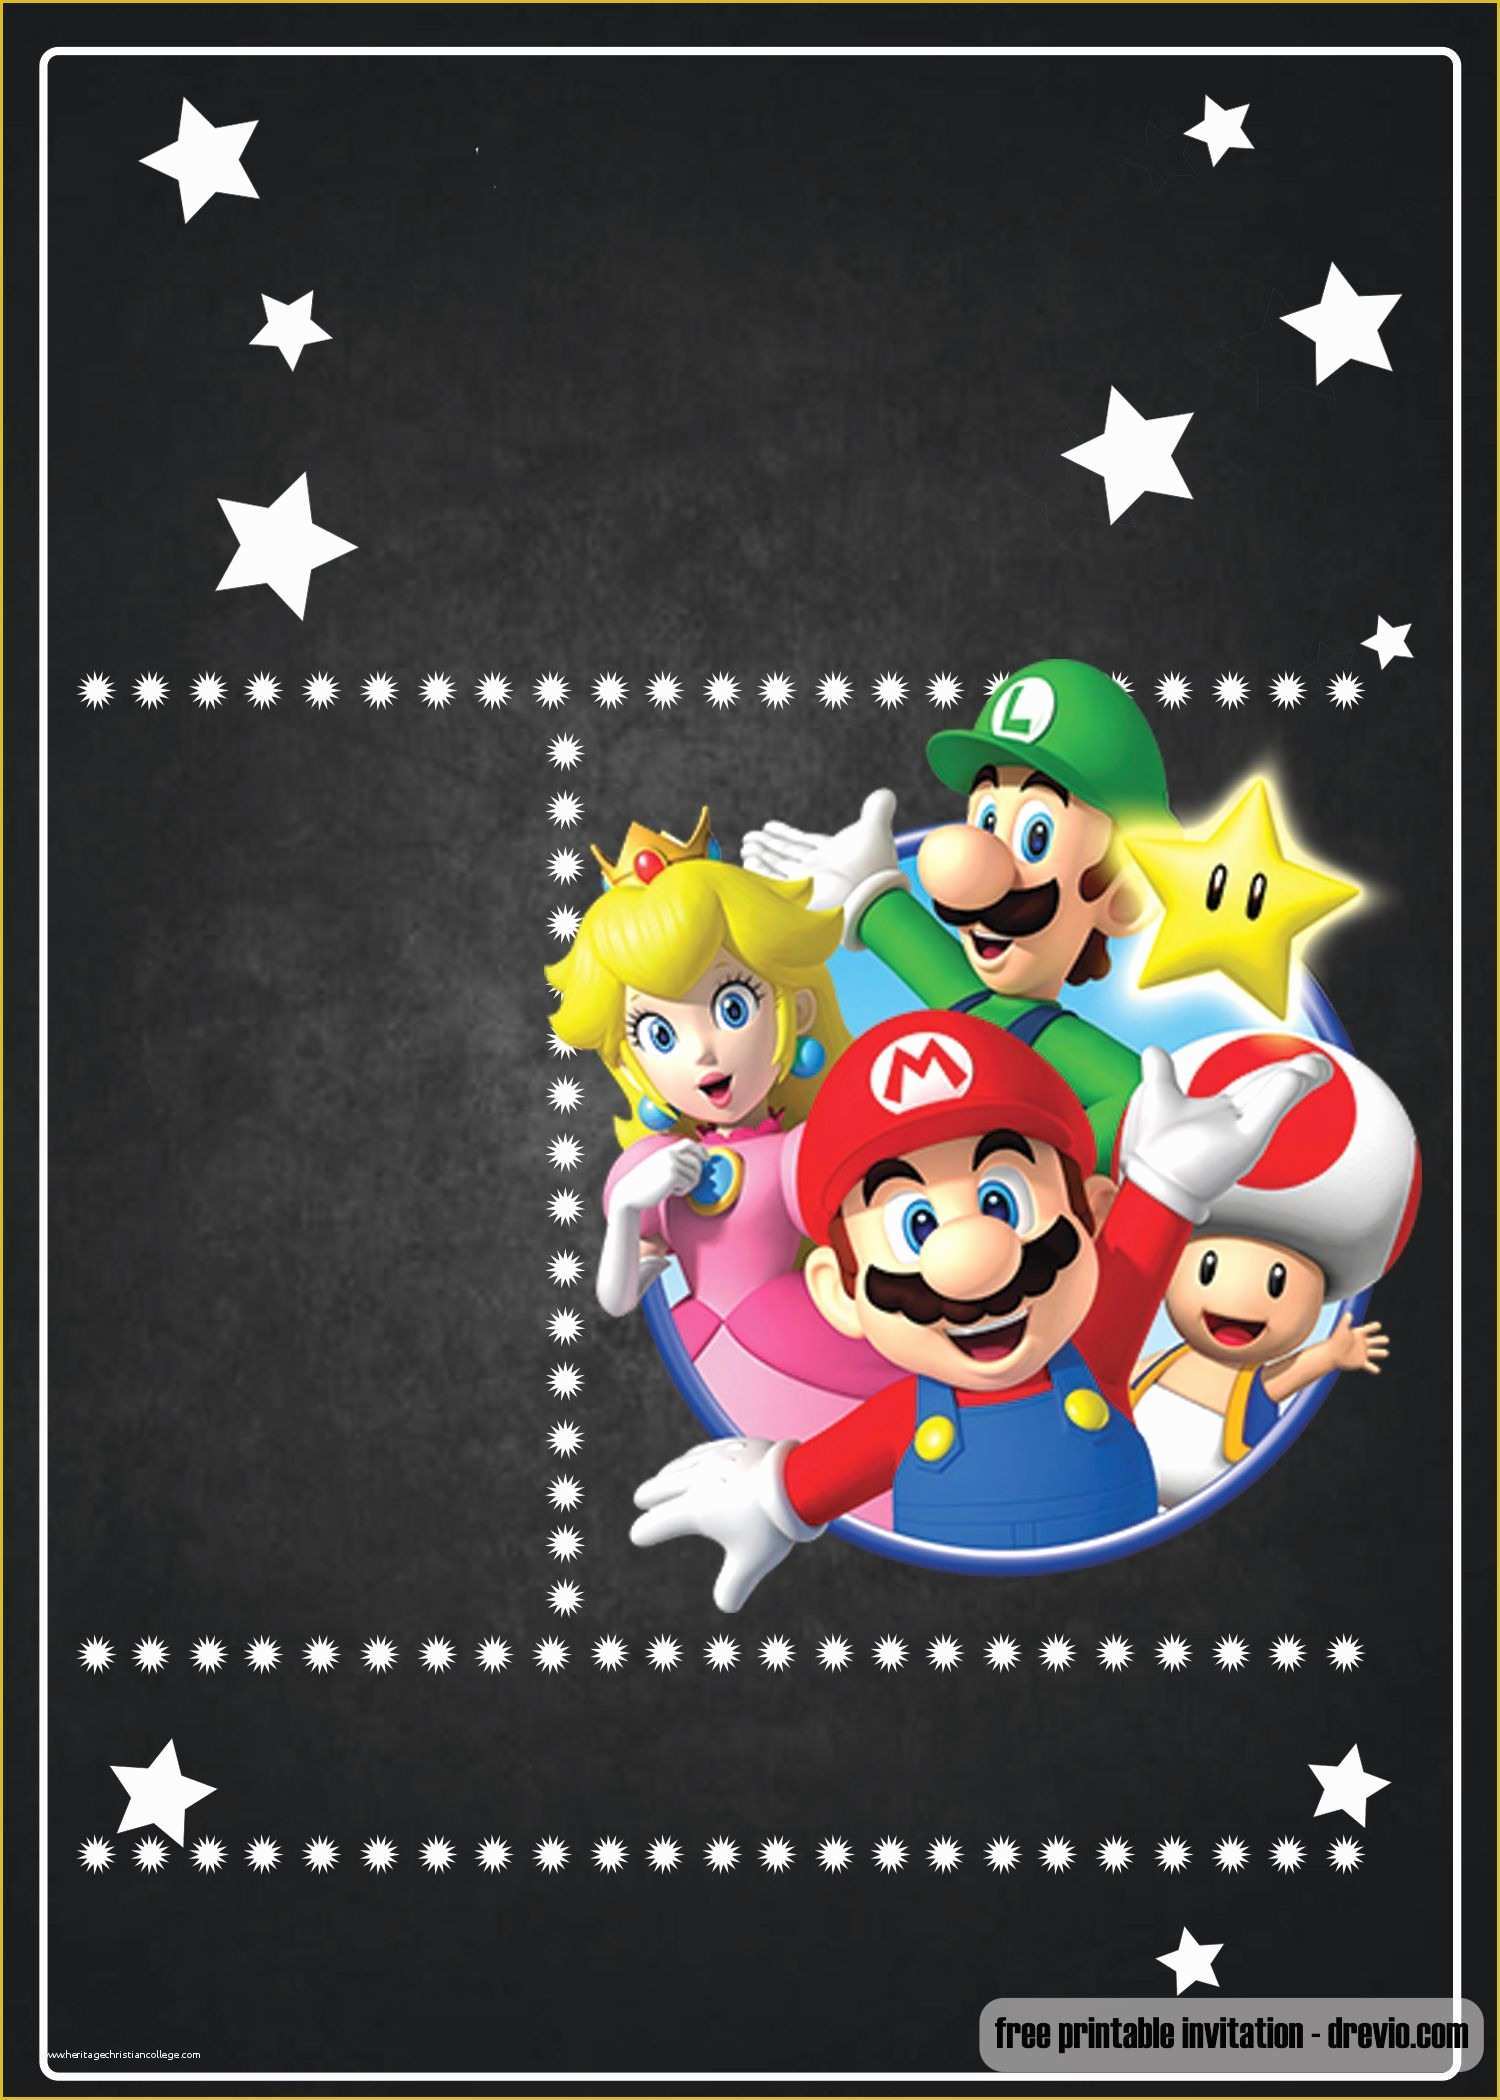 Super Mario Invitations Template Free Of Free Super Mario Chalkboard Invitation